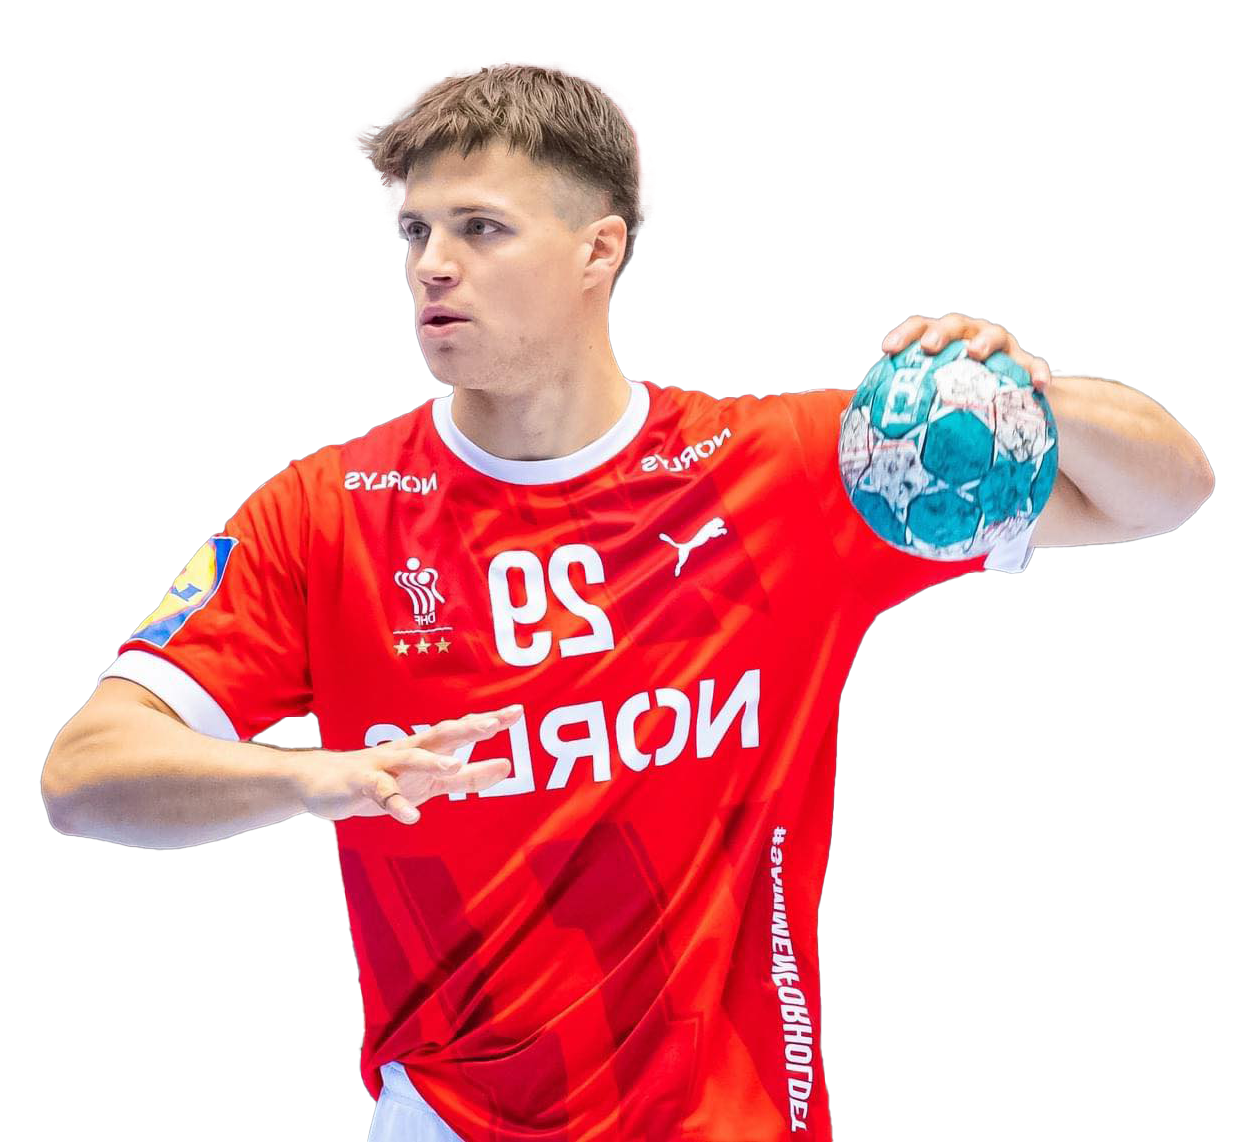 Aaron Mensing - Dansk national spiller i Håndbold